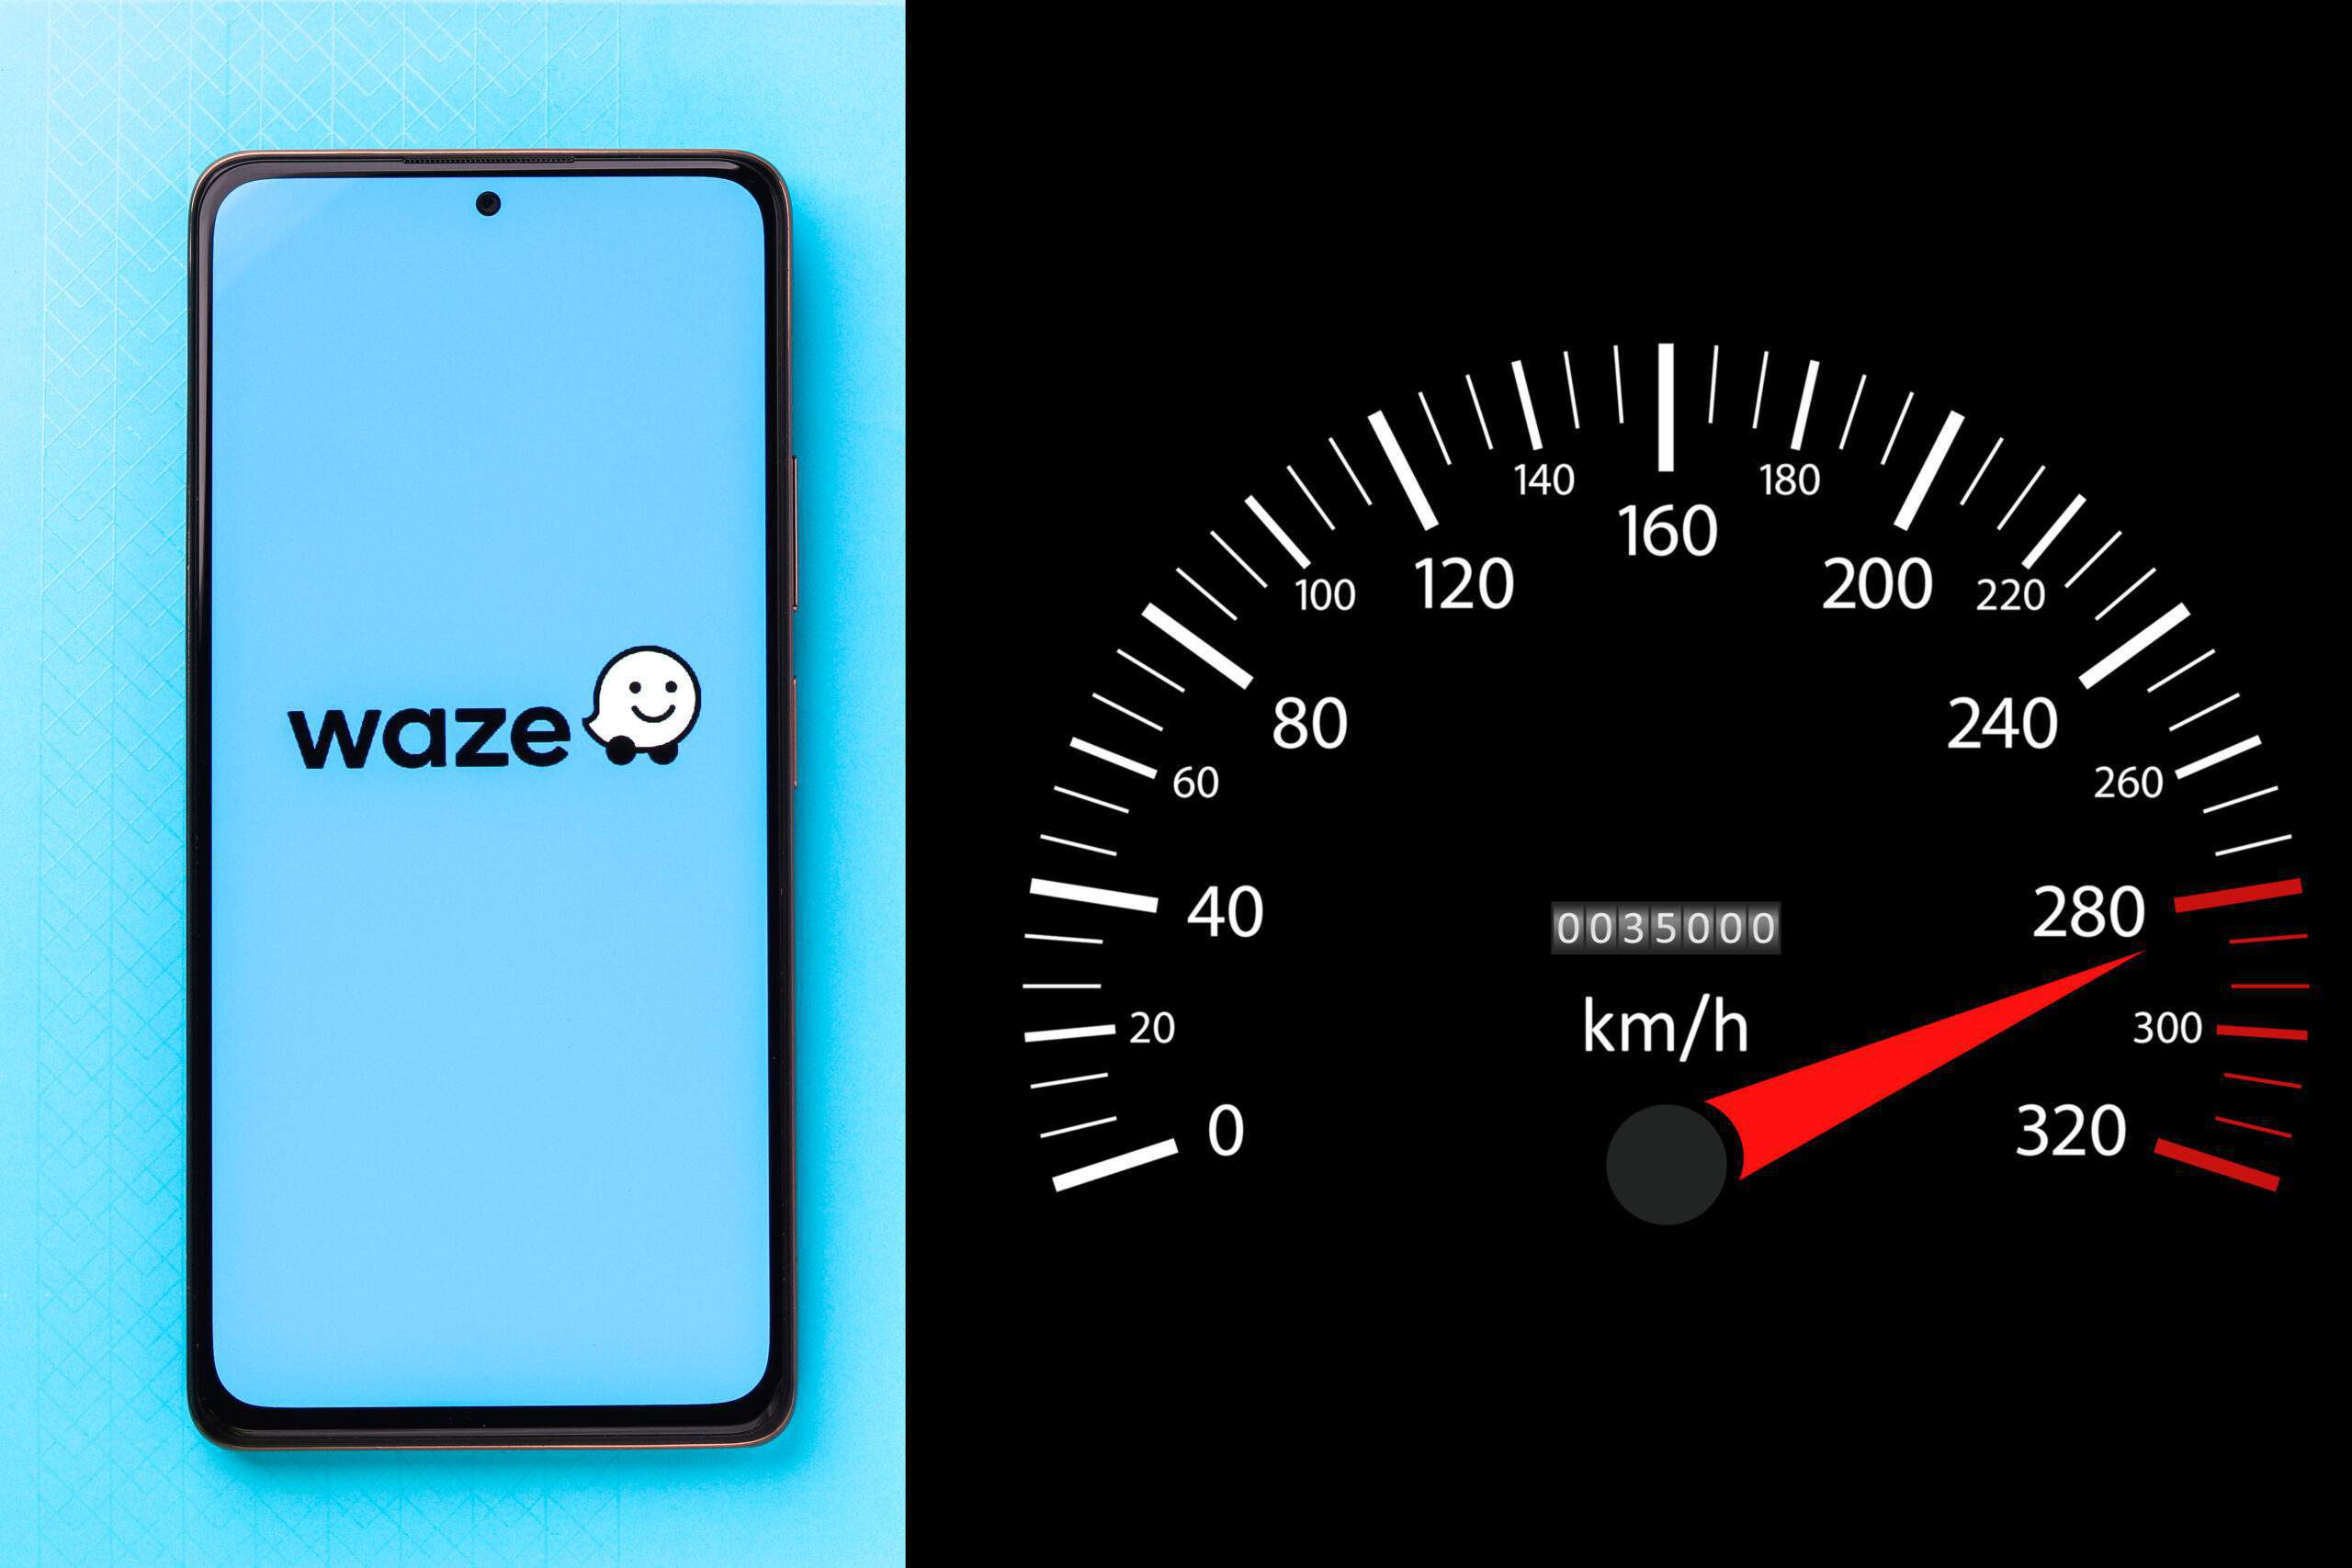 Faut-il suivre les indications de vitesse de Waze ou du compteur ?